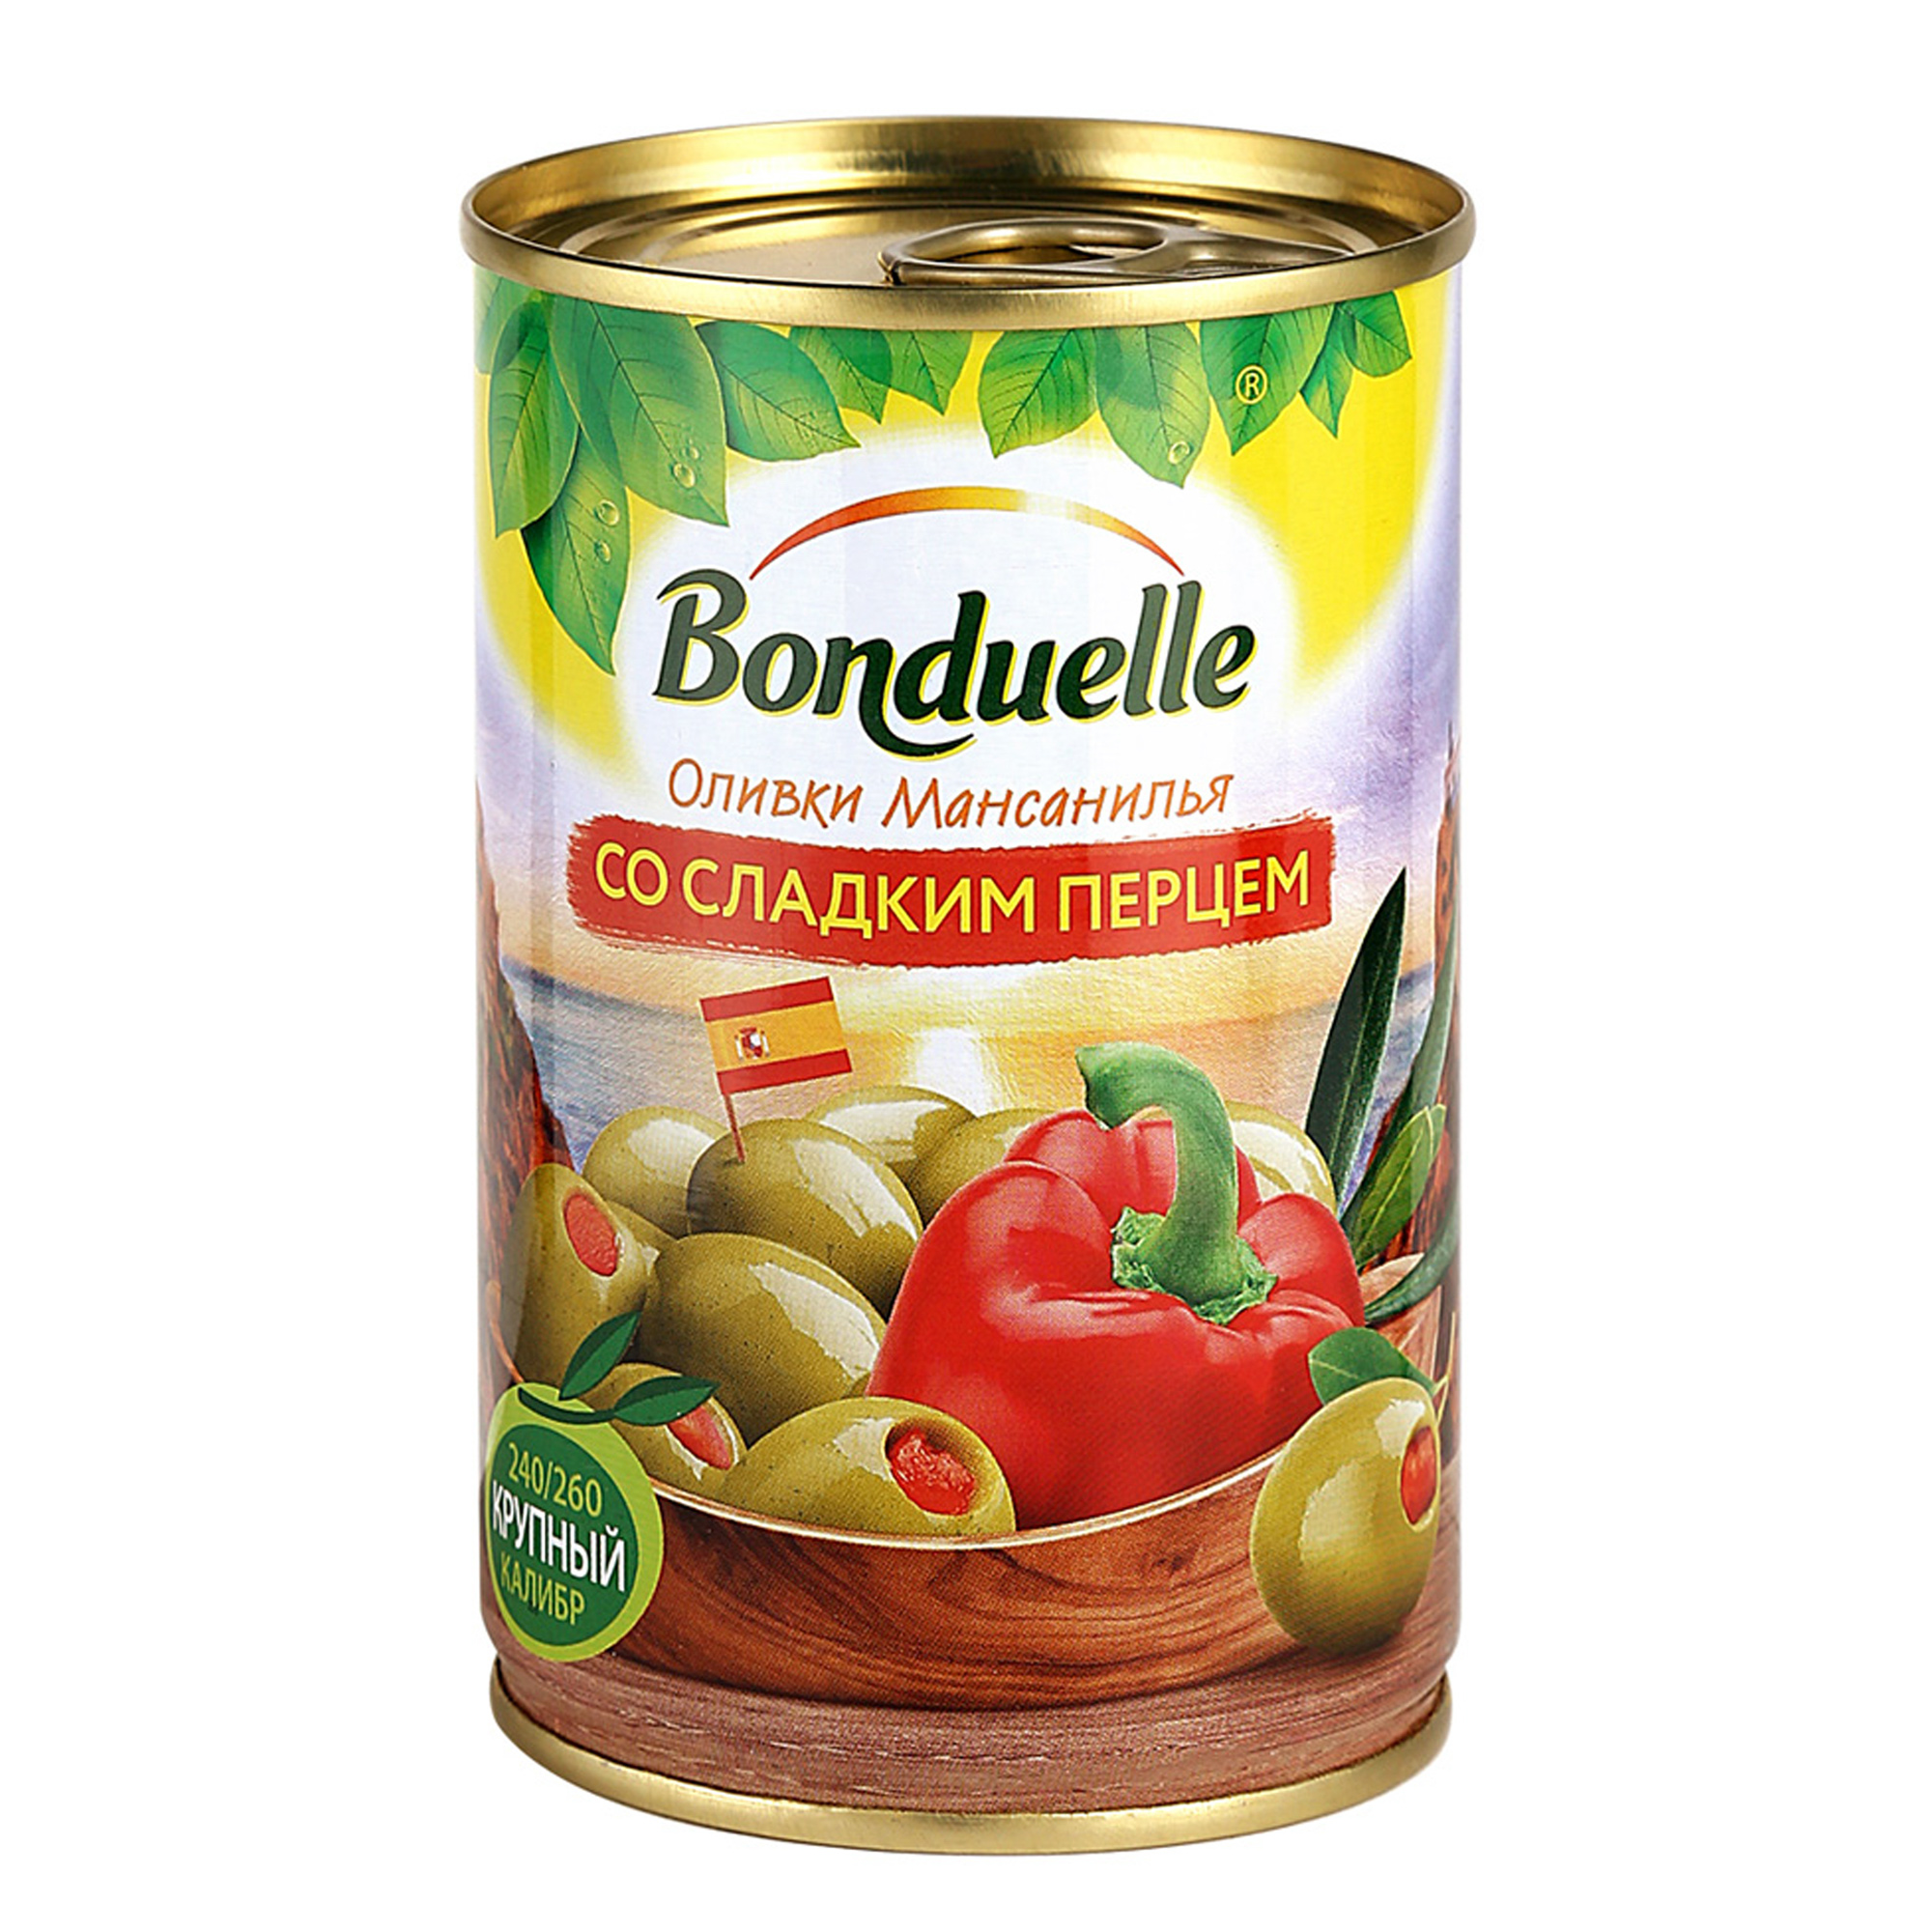 Оливки Bonduelle со сладким перцем 314 г оливки bonduelle со сладким перцем 300 гр